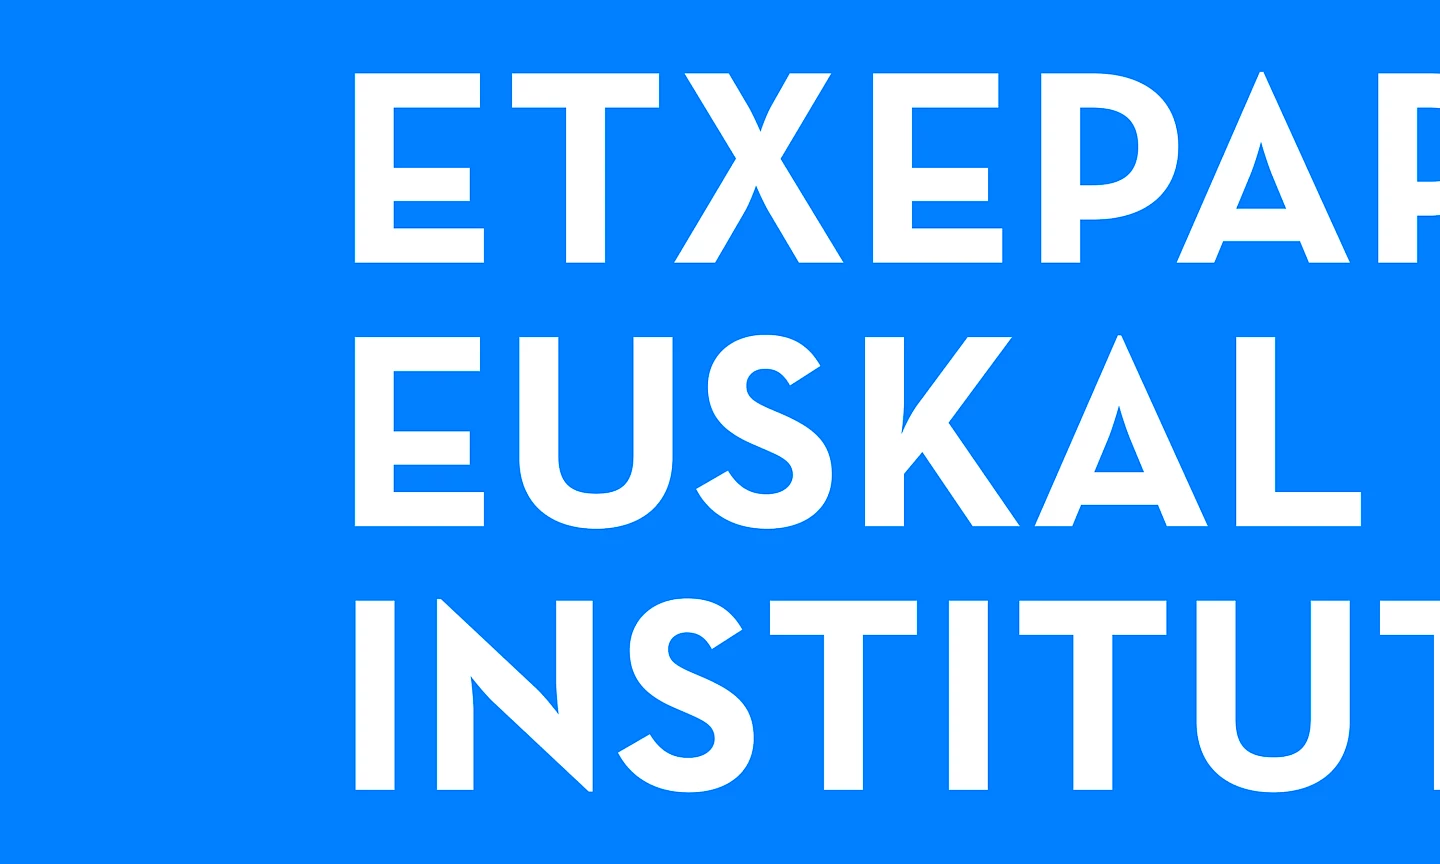 header institutua etxepare 01 narrative design spaces move branding digital 